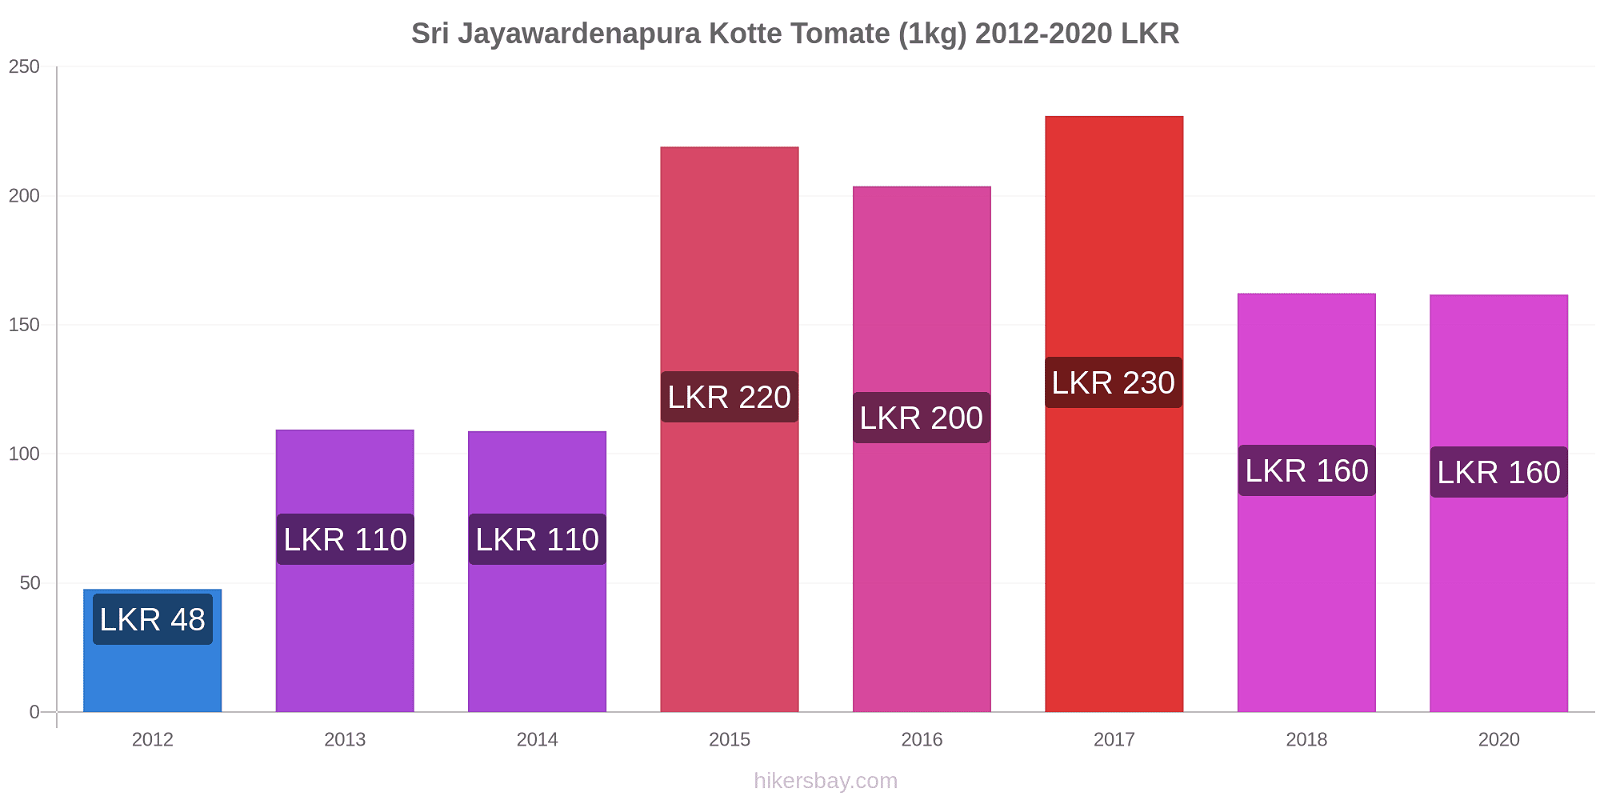 Sri Jayawardenapura Kotte cambios de precios Tomate (1kg) hikersbay.com